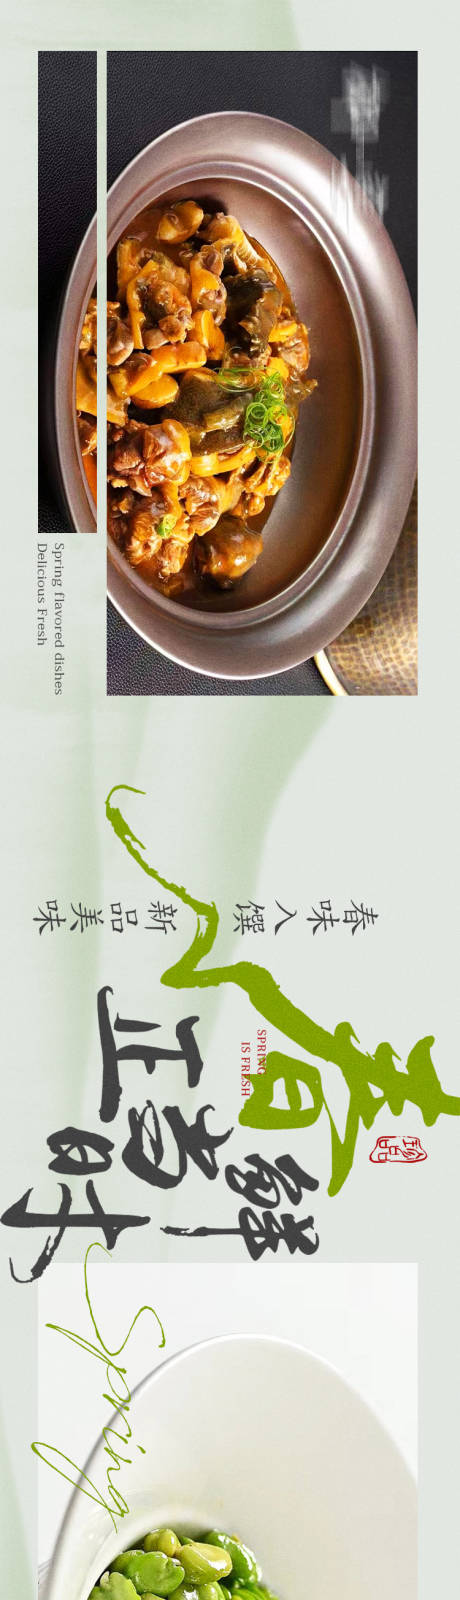 中餐厅私房菜春季主大众点评五连图海报